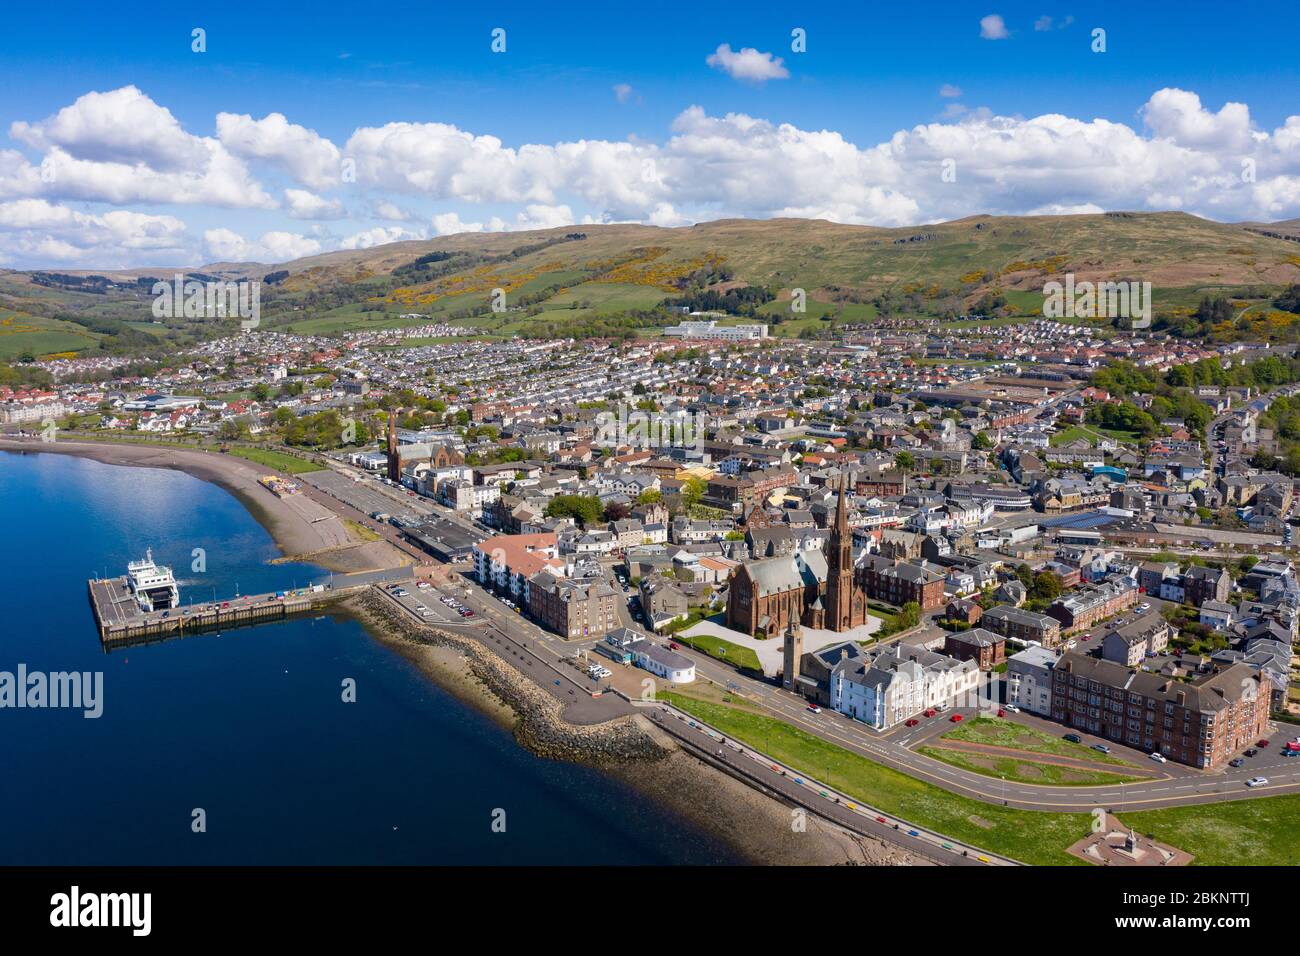 Vue aérienne de la ville côtière de Largs dans le nord de l'Ayrshire, en Écosse, au Royaume-Uni Banque D'Images